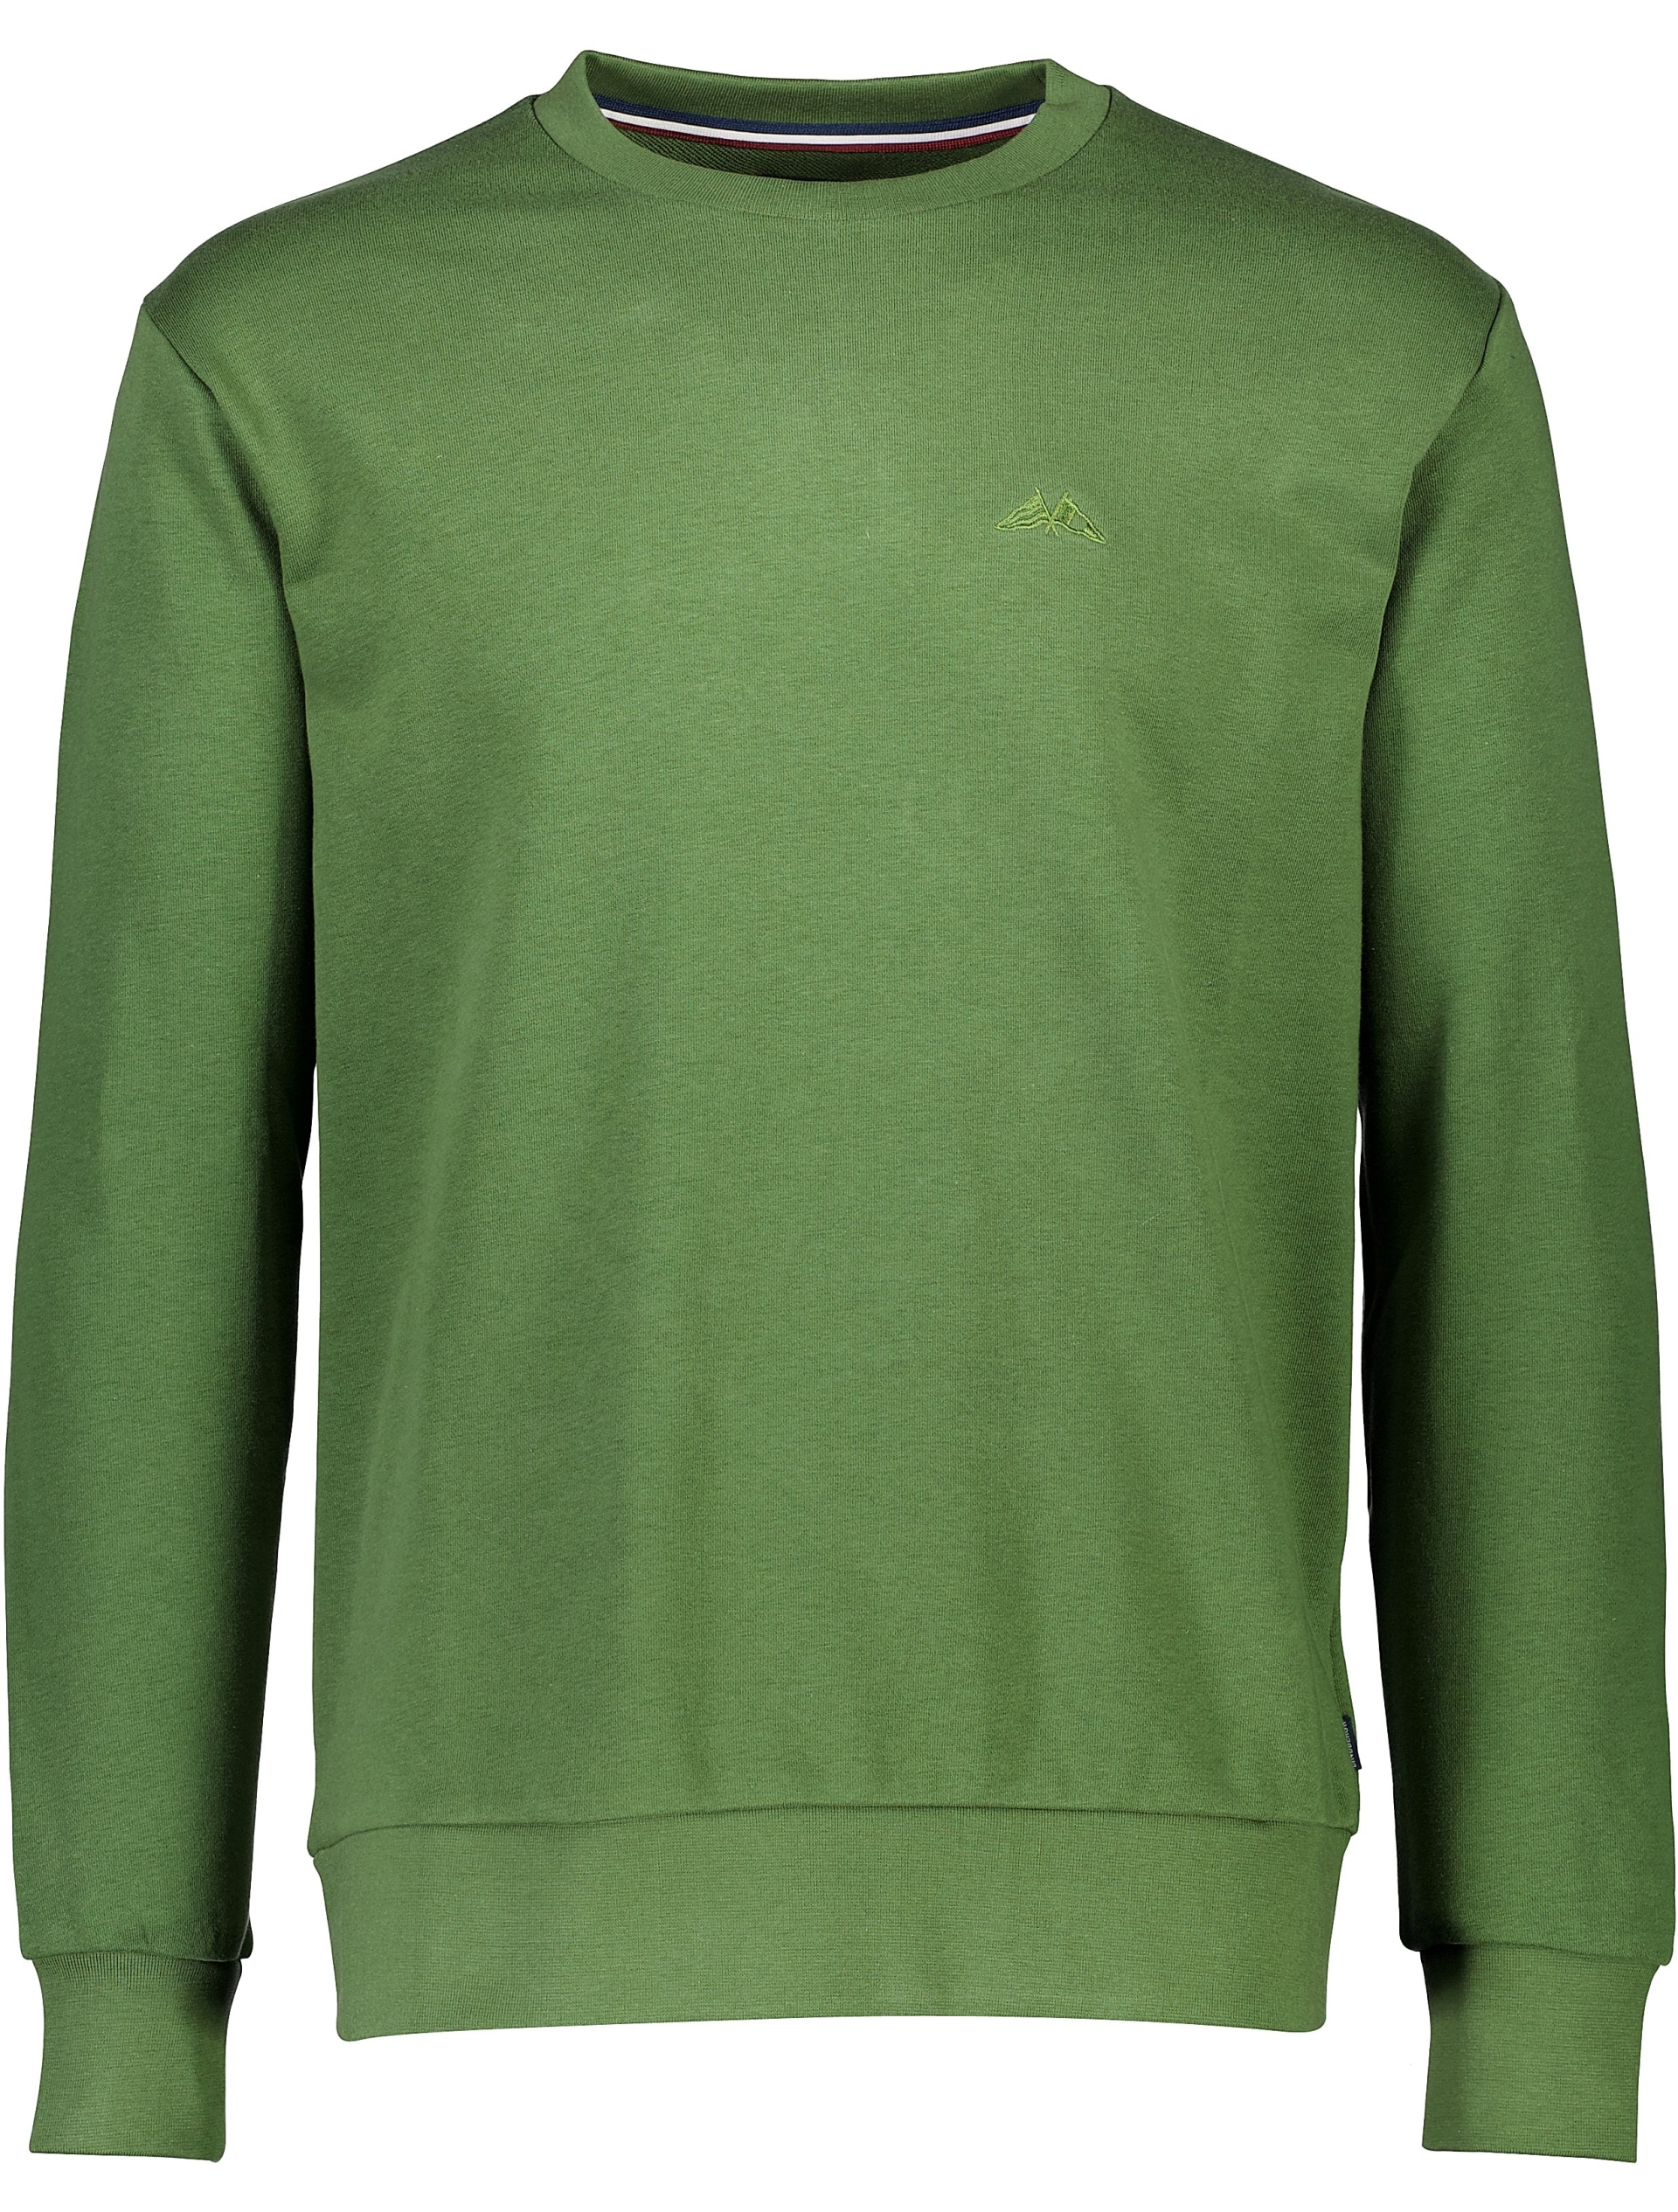 Lindbergh Sweatshirt grøn / dk green